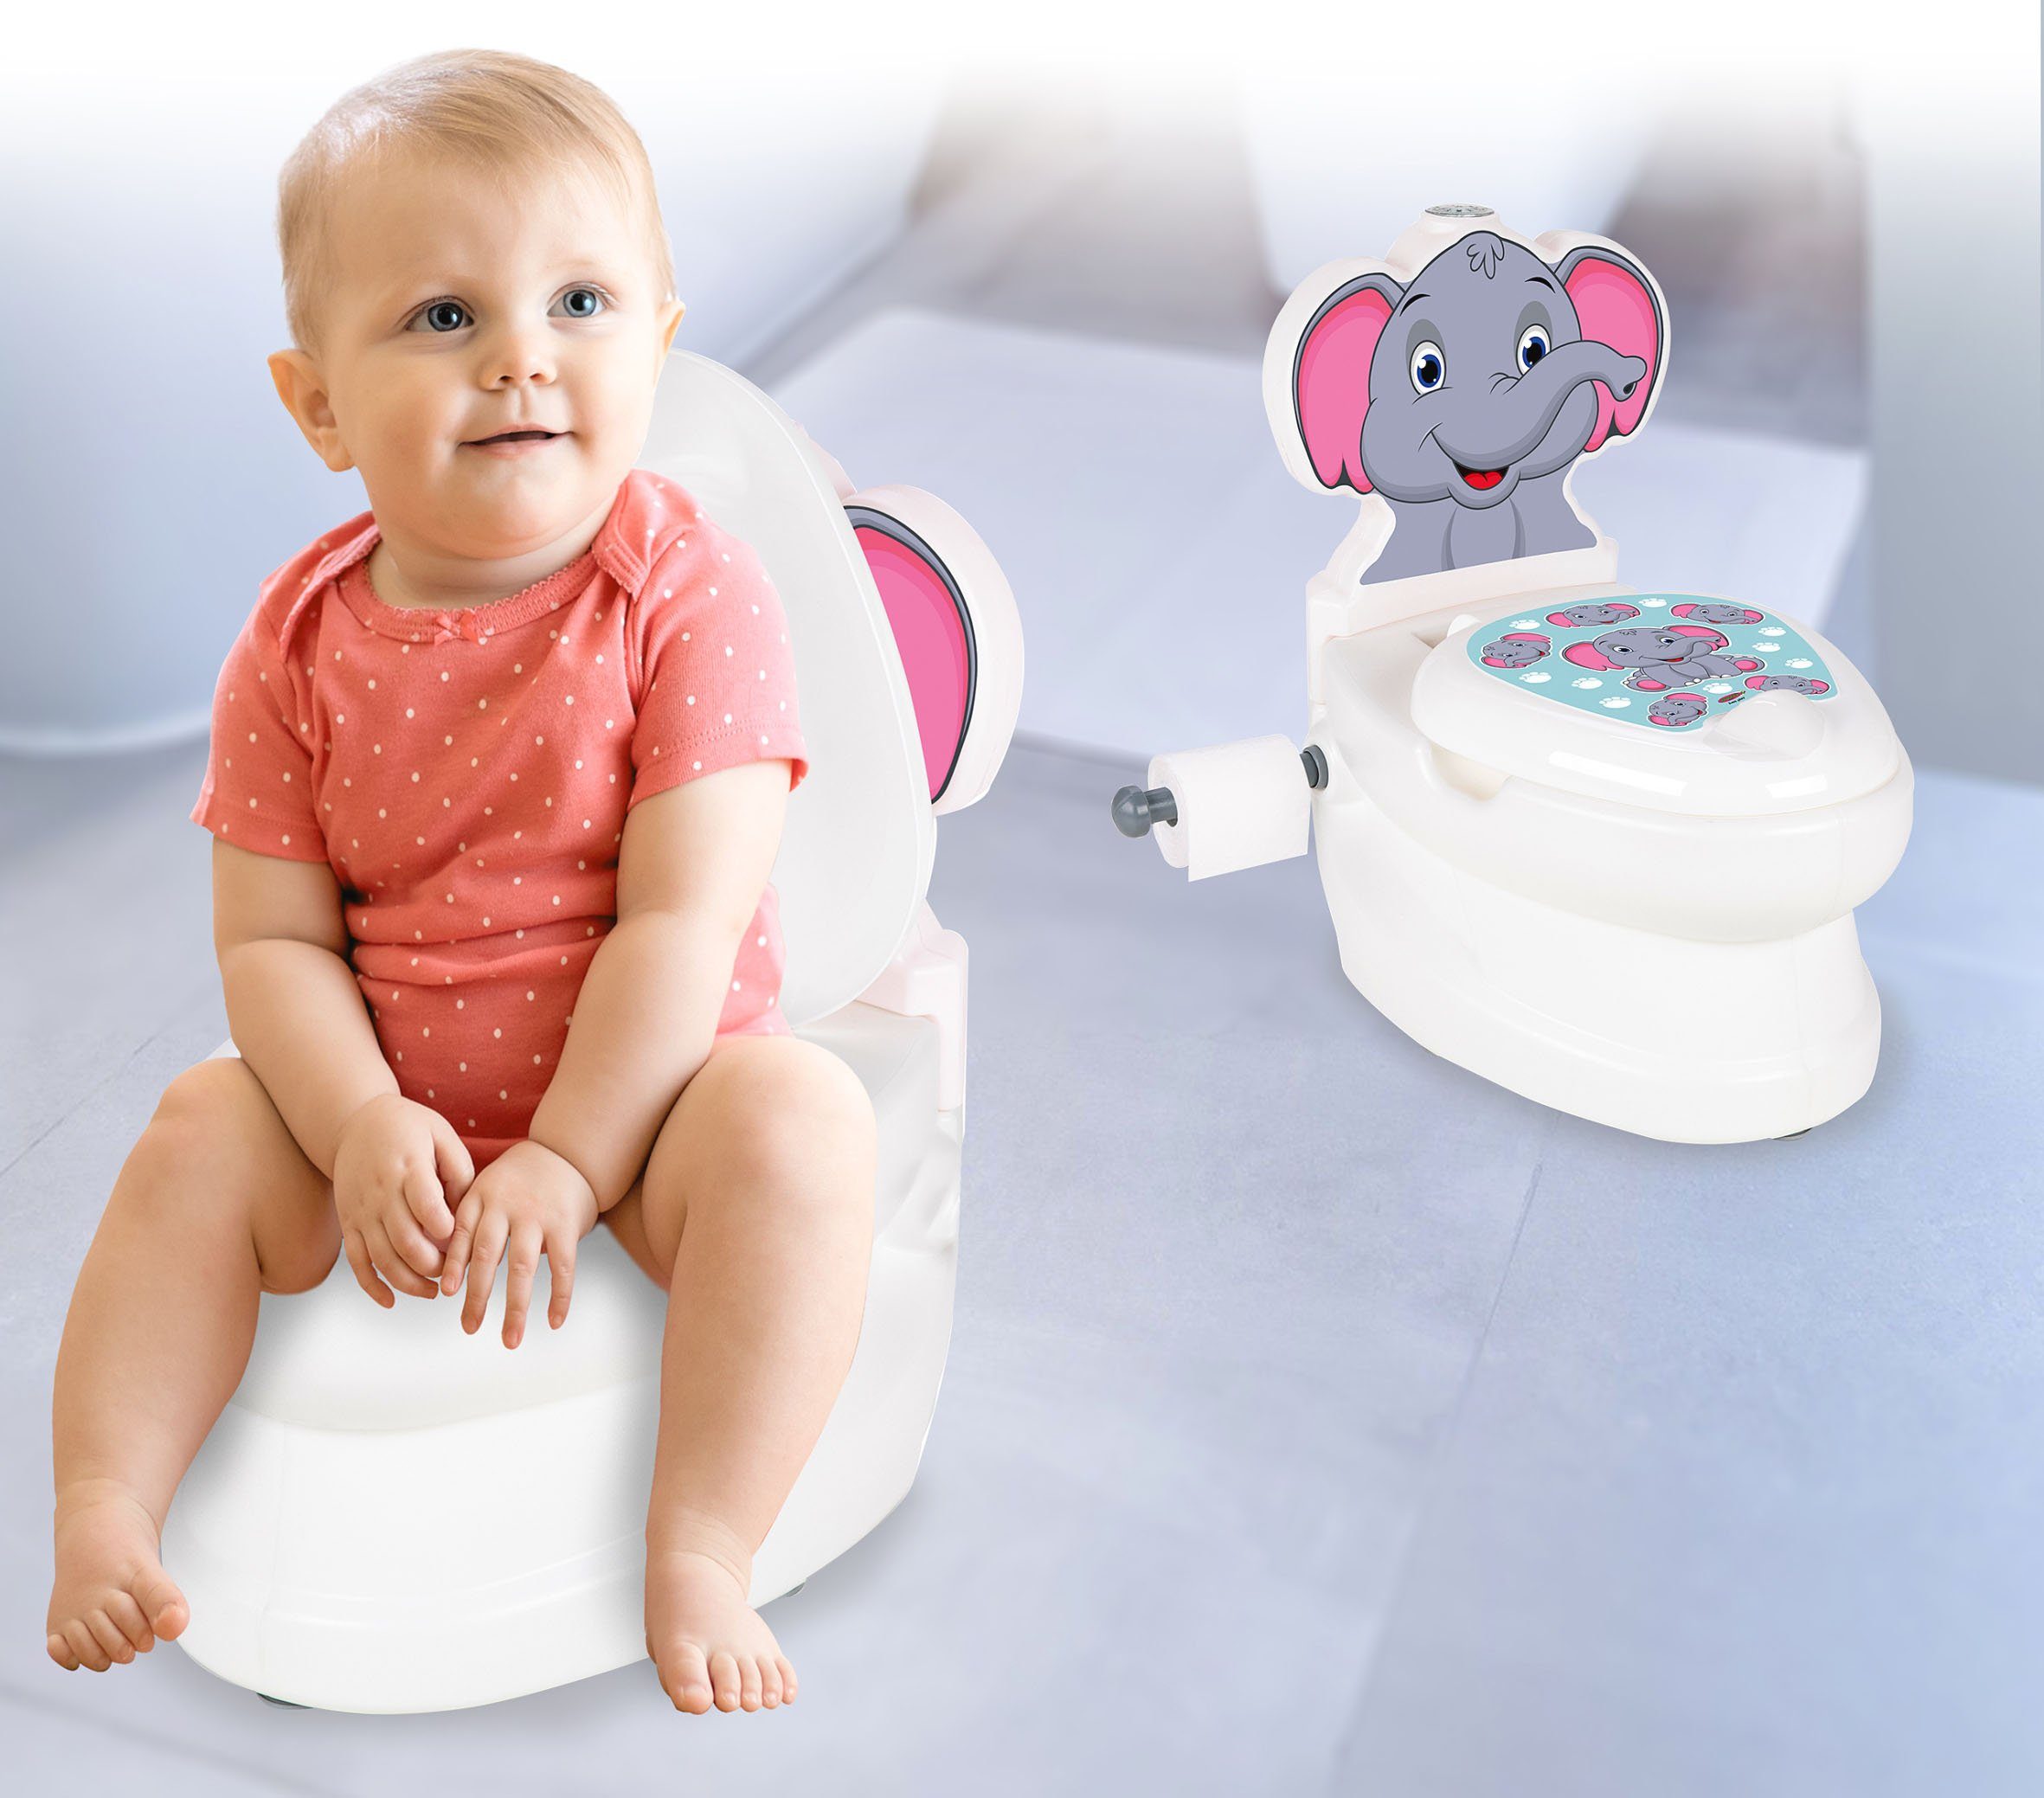 Toilettentrainer Toilette, kleine mit Meine Jamara Toilettenpapierhalter und Spülsound Elefant,